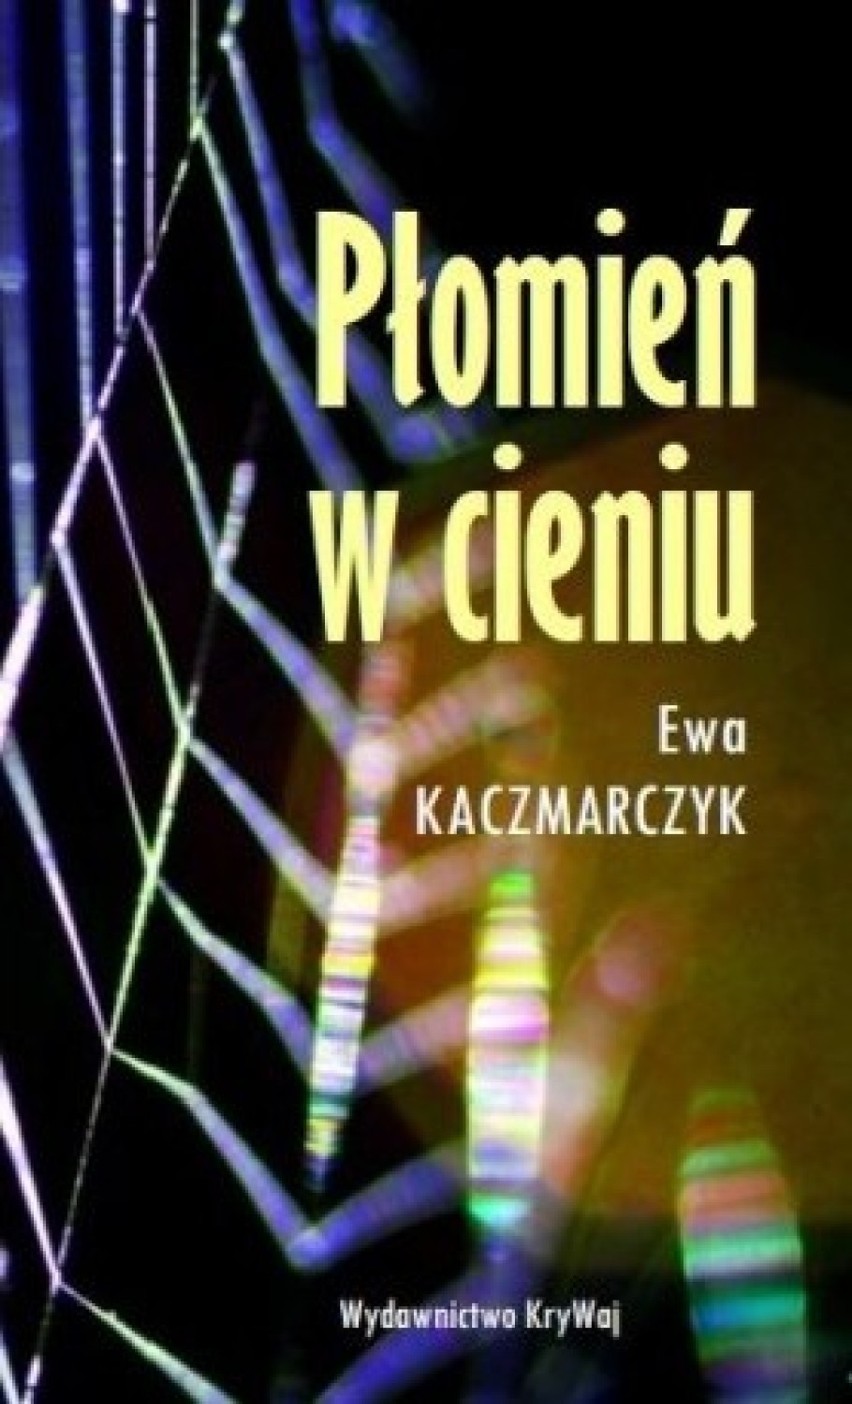 Promocja książki Ewy Kaczmarczyk "Płomień w cieniu" w MBP w Radomsku